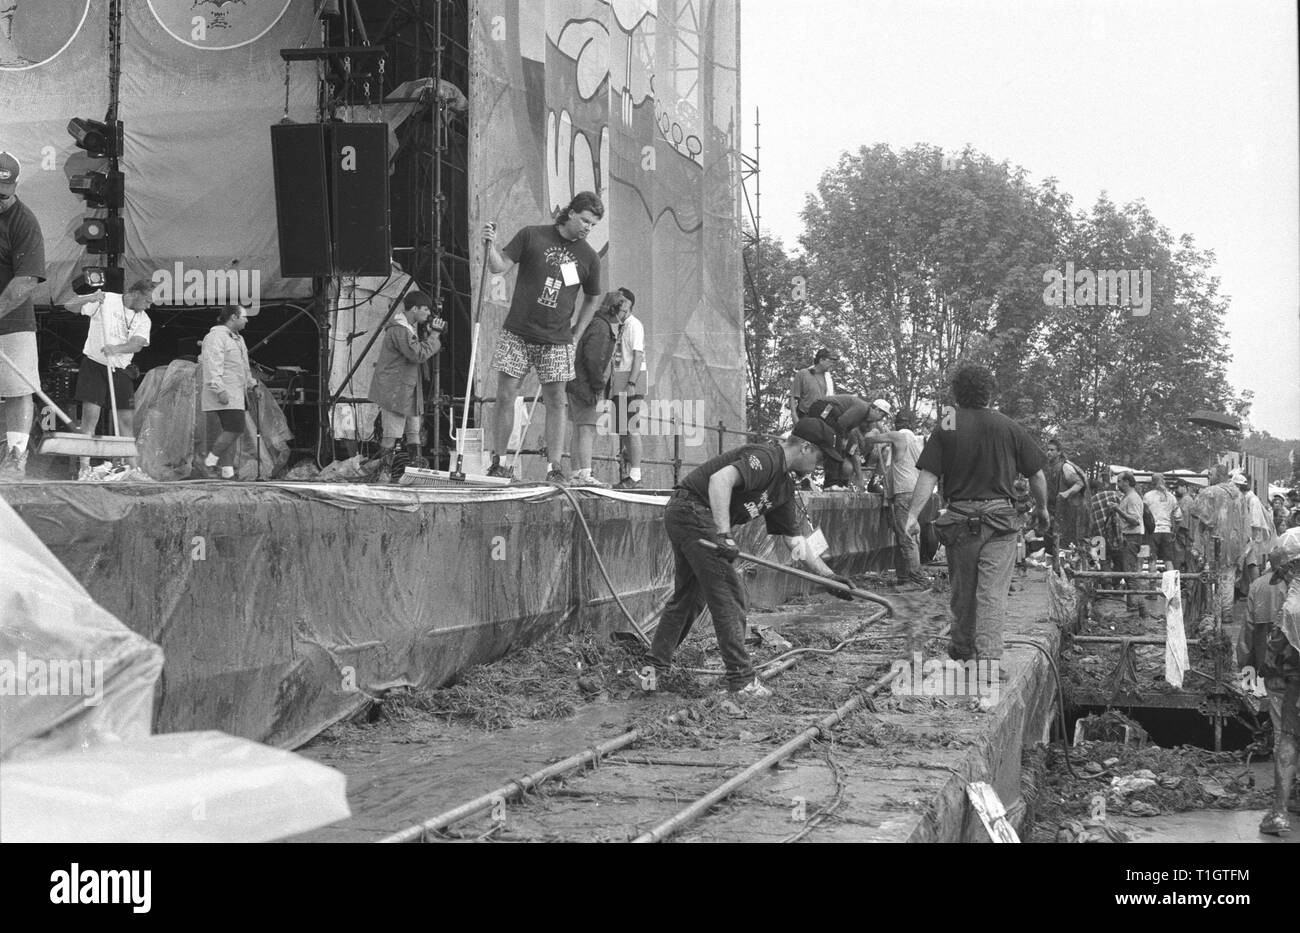 Les travailleurs ont montré l'étape de raclage et pelleter de la boue et de l'herbe au loin de la vidéo rail track à Woodstock 94 à Saugerties, New York. Banque D'Images